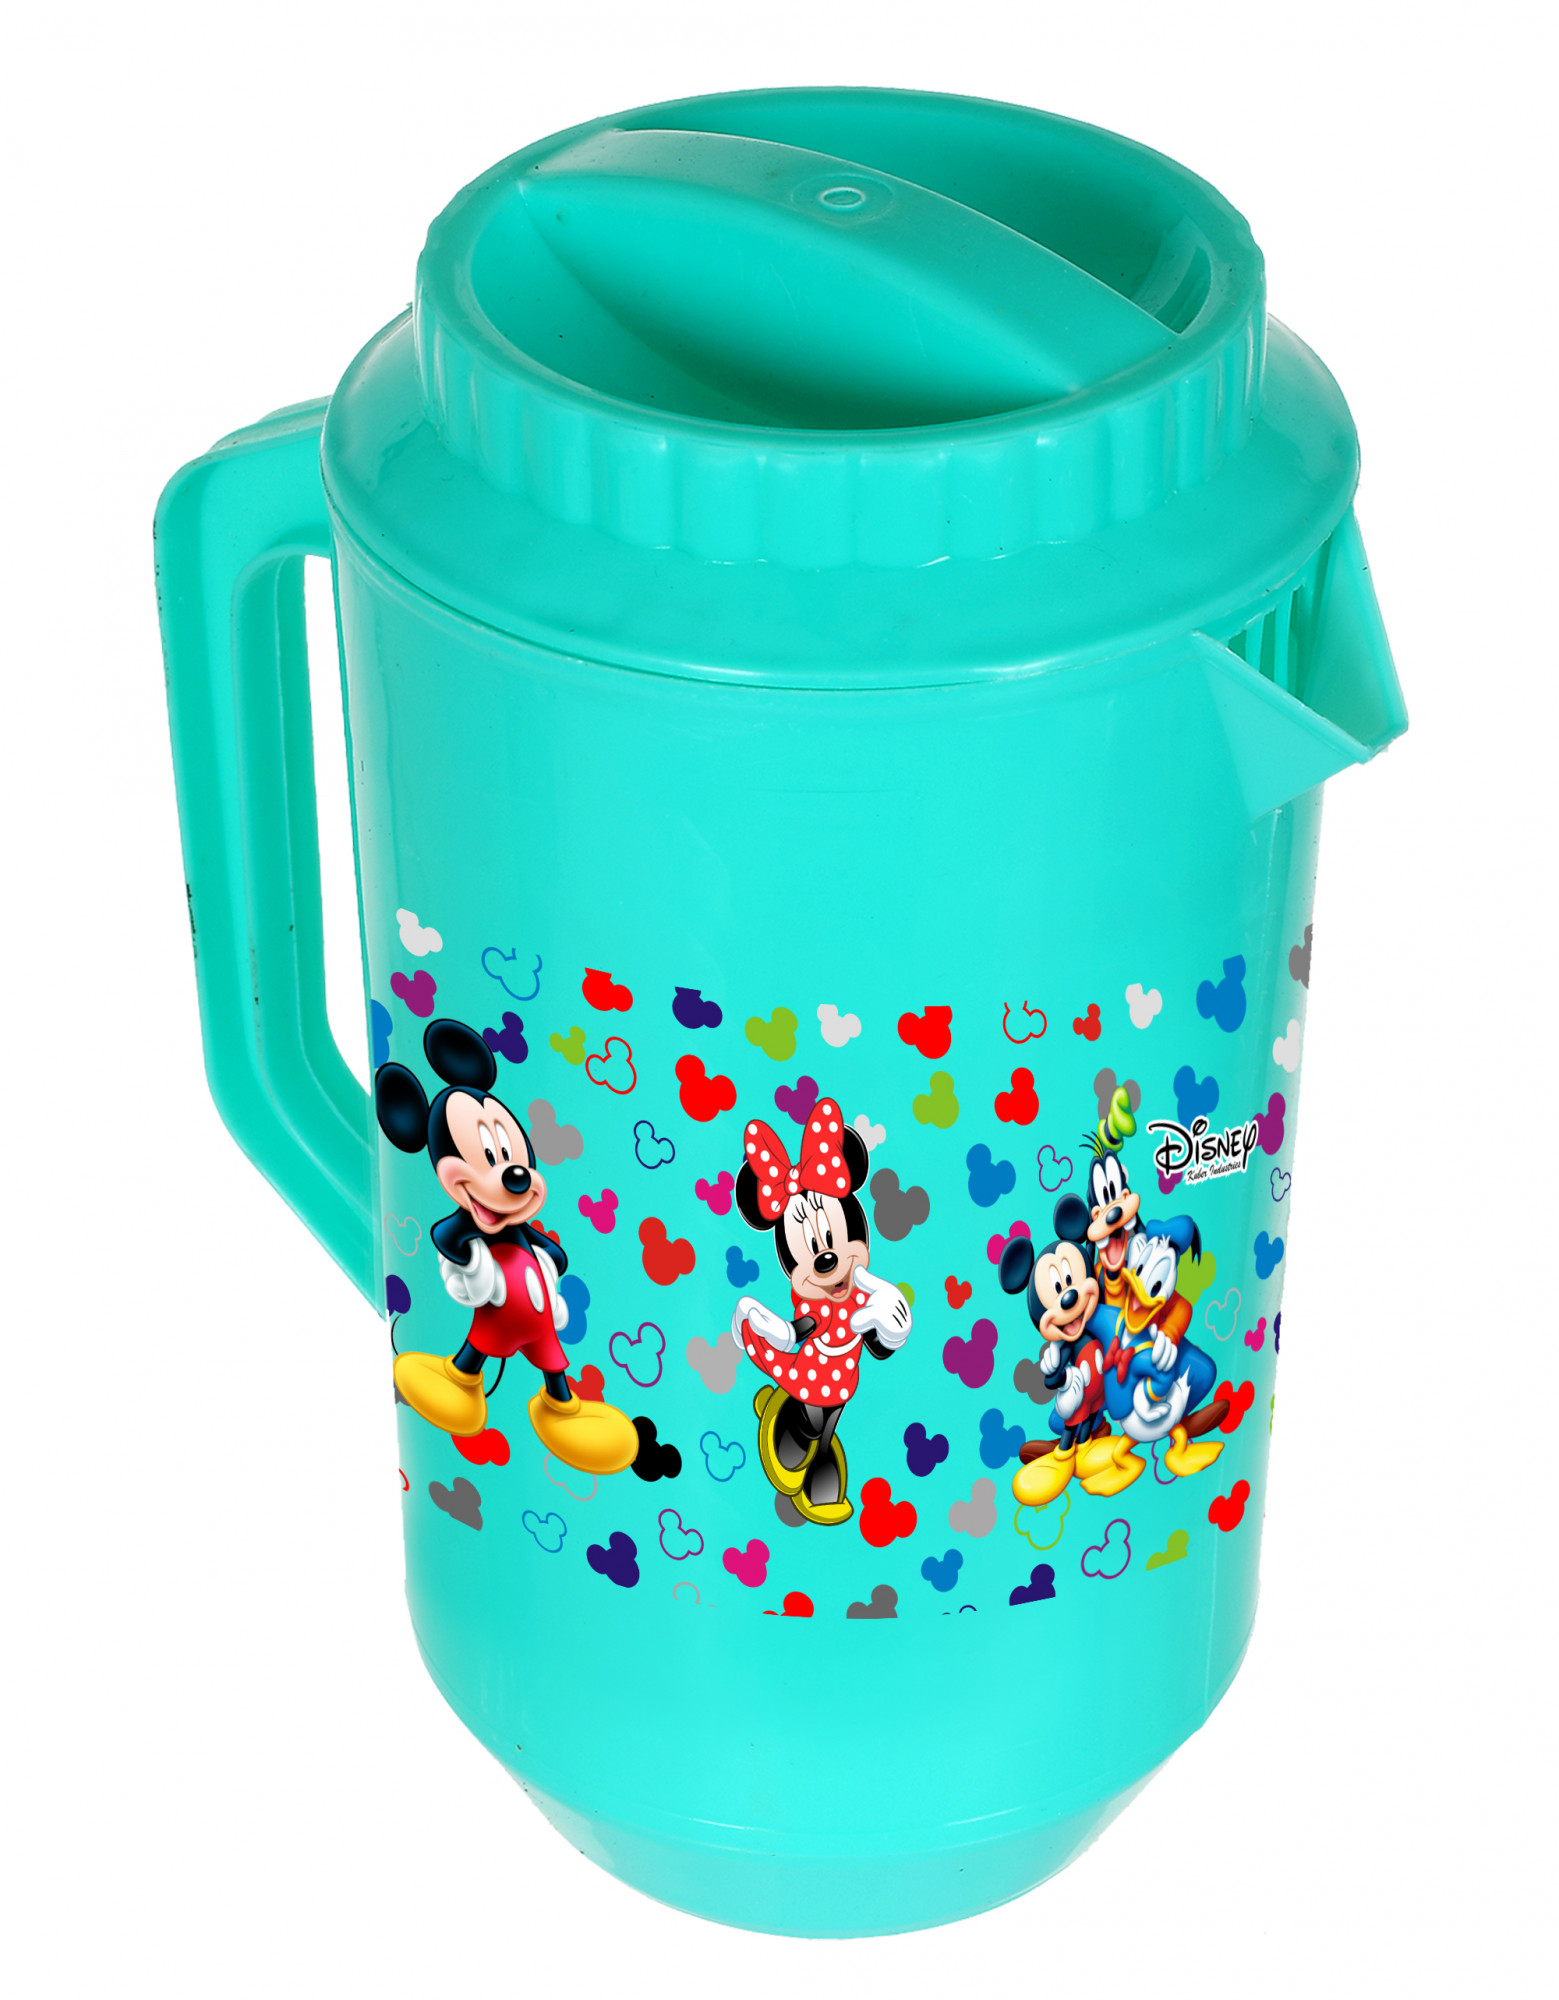 Kuber Industries Disney Team Mickey Print Unbreakable Multipurpose Plastic Water & Juice Jug With Lid,2 Ltr (Green)